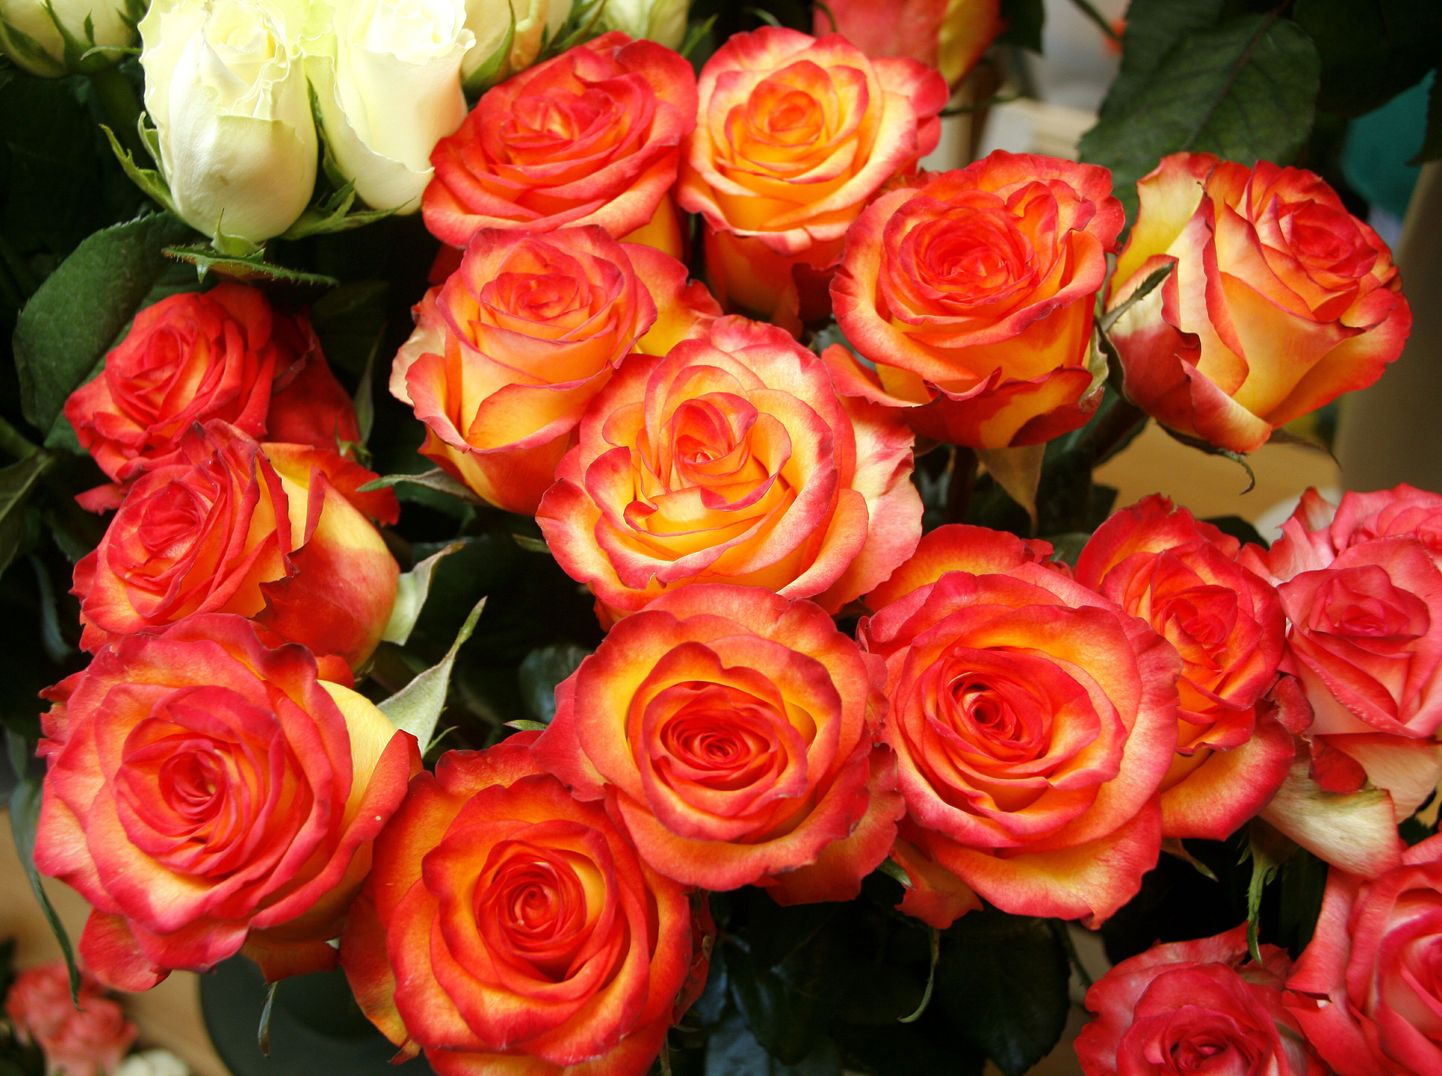 Otse kasvatajalt ostes võib roosi saada poole odavamalt kui poest.